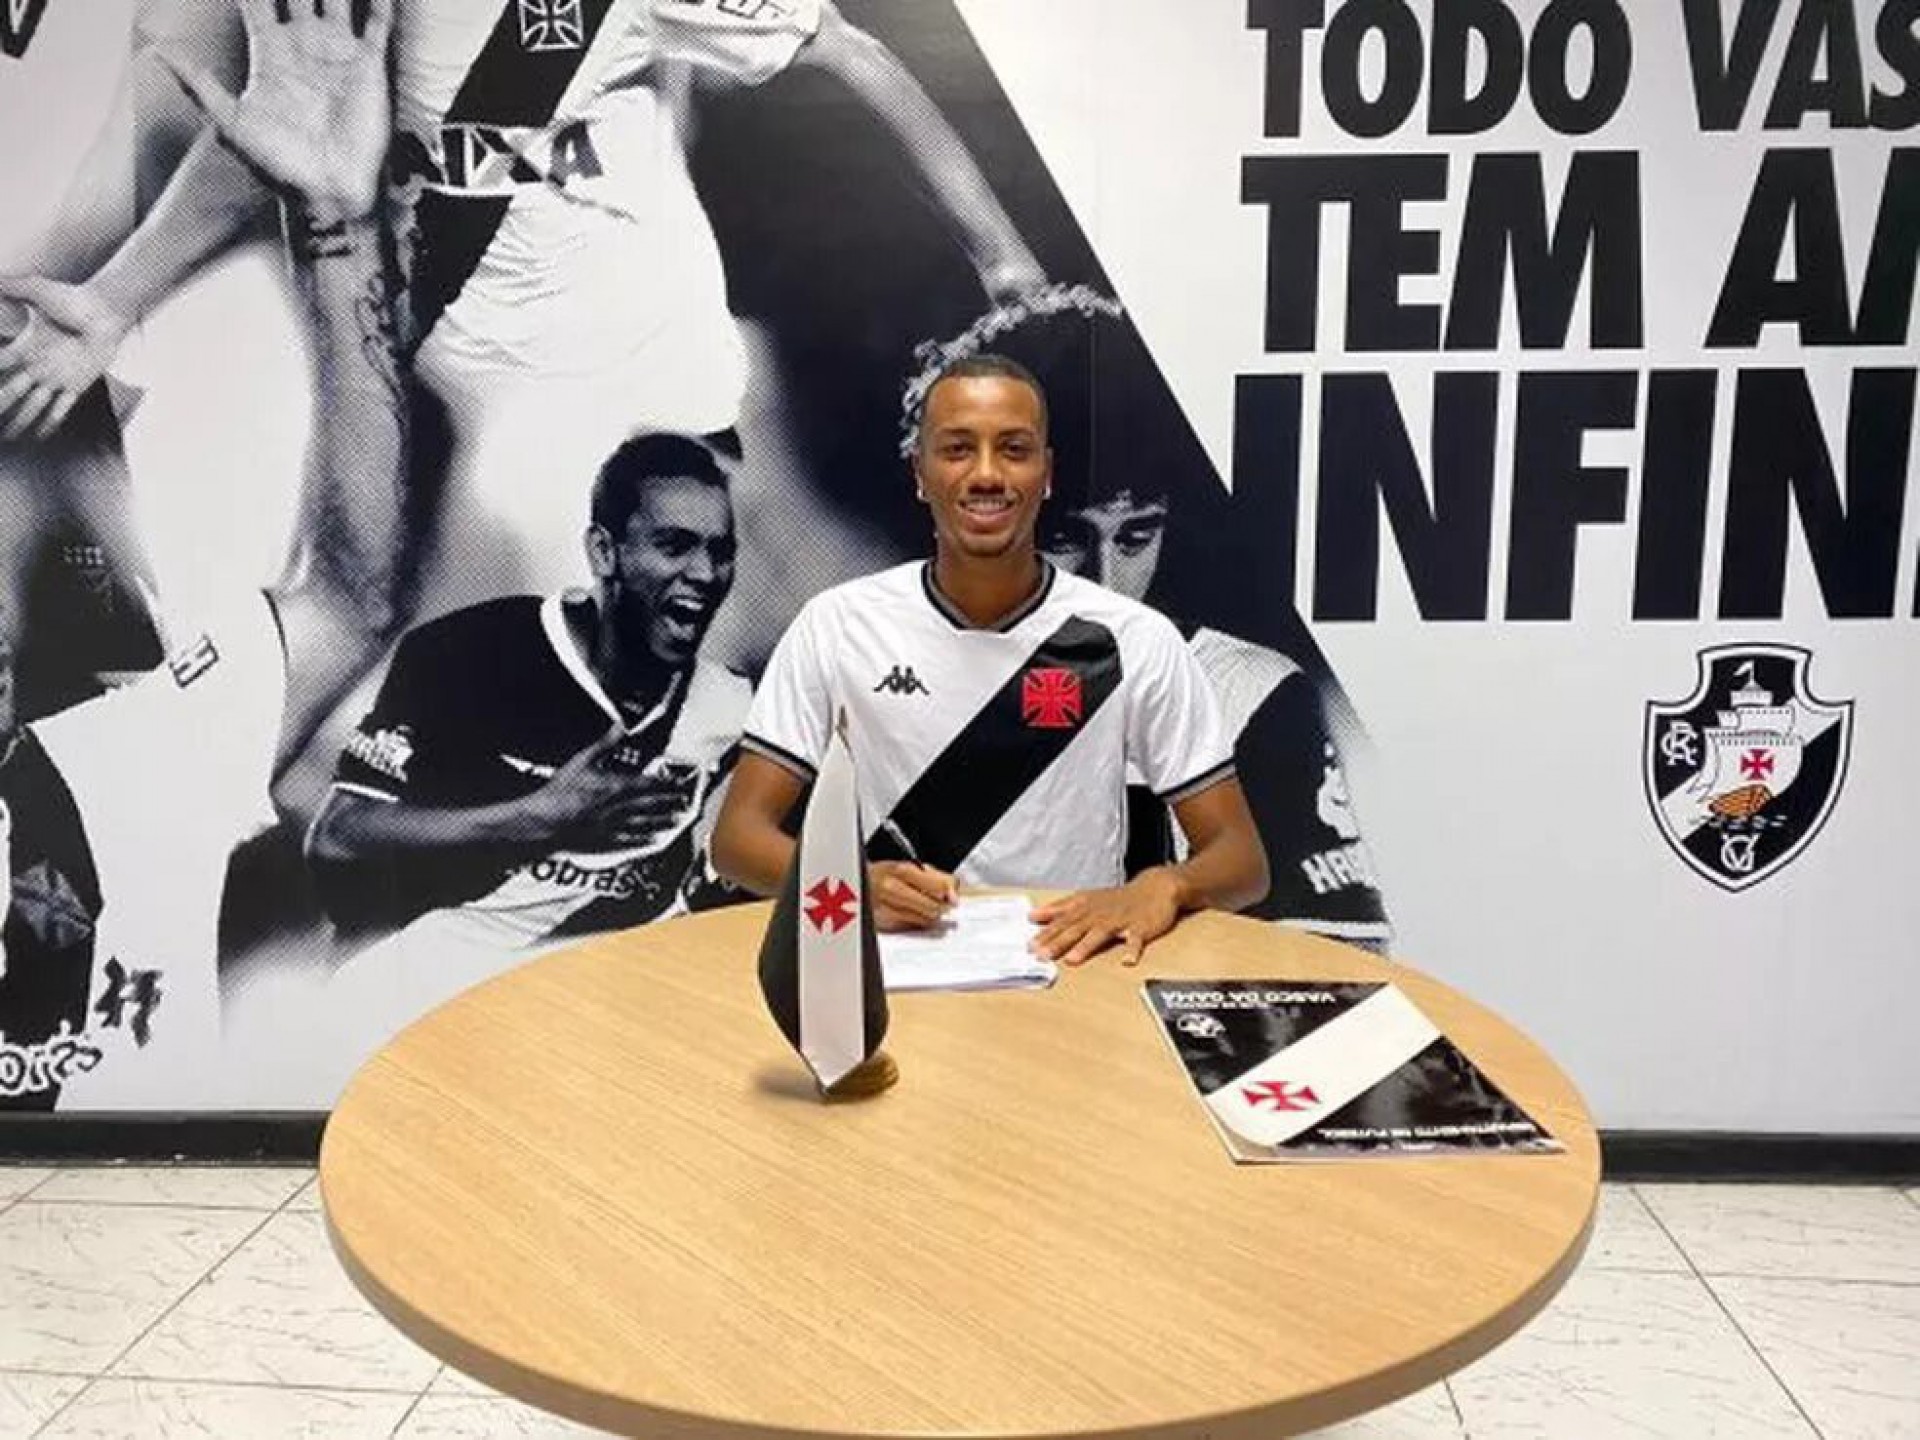 Vasco assina contrato com zagueiro até março de 2025 - Foto: Matheus Babo/Vasco